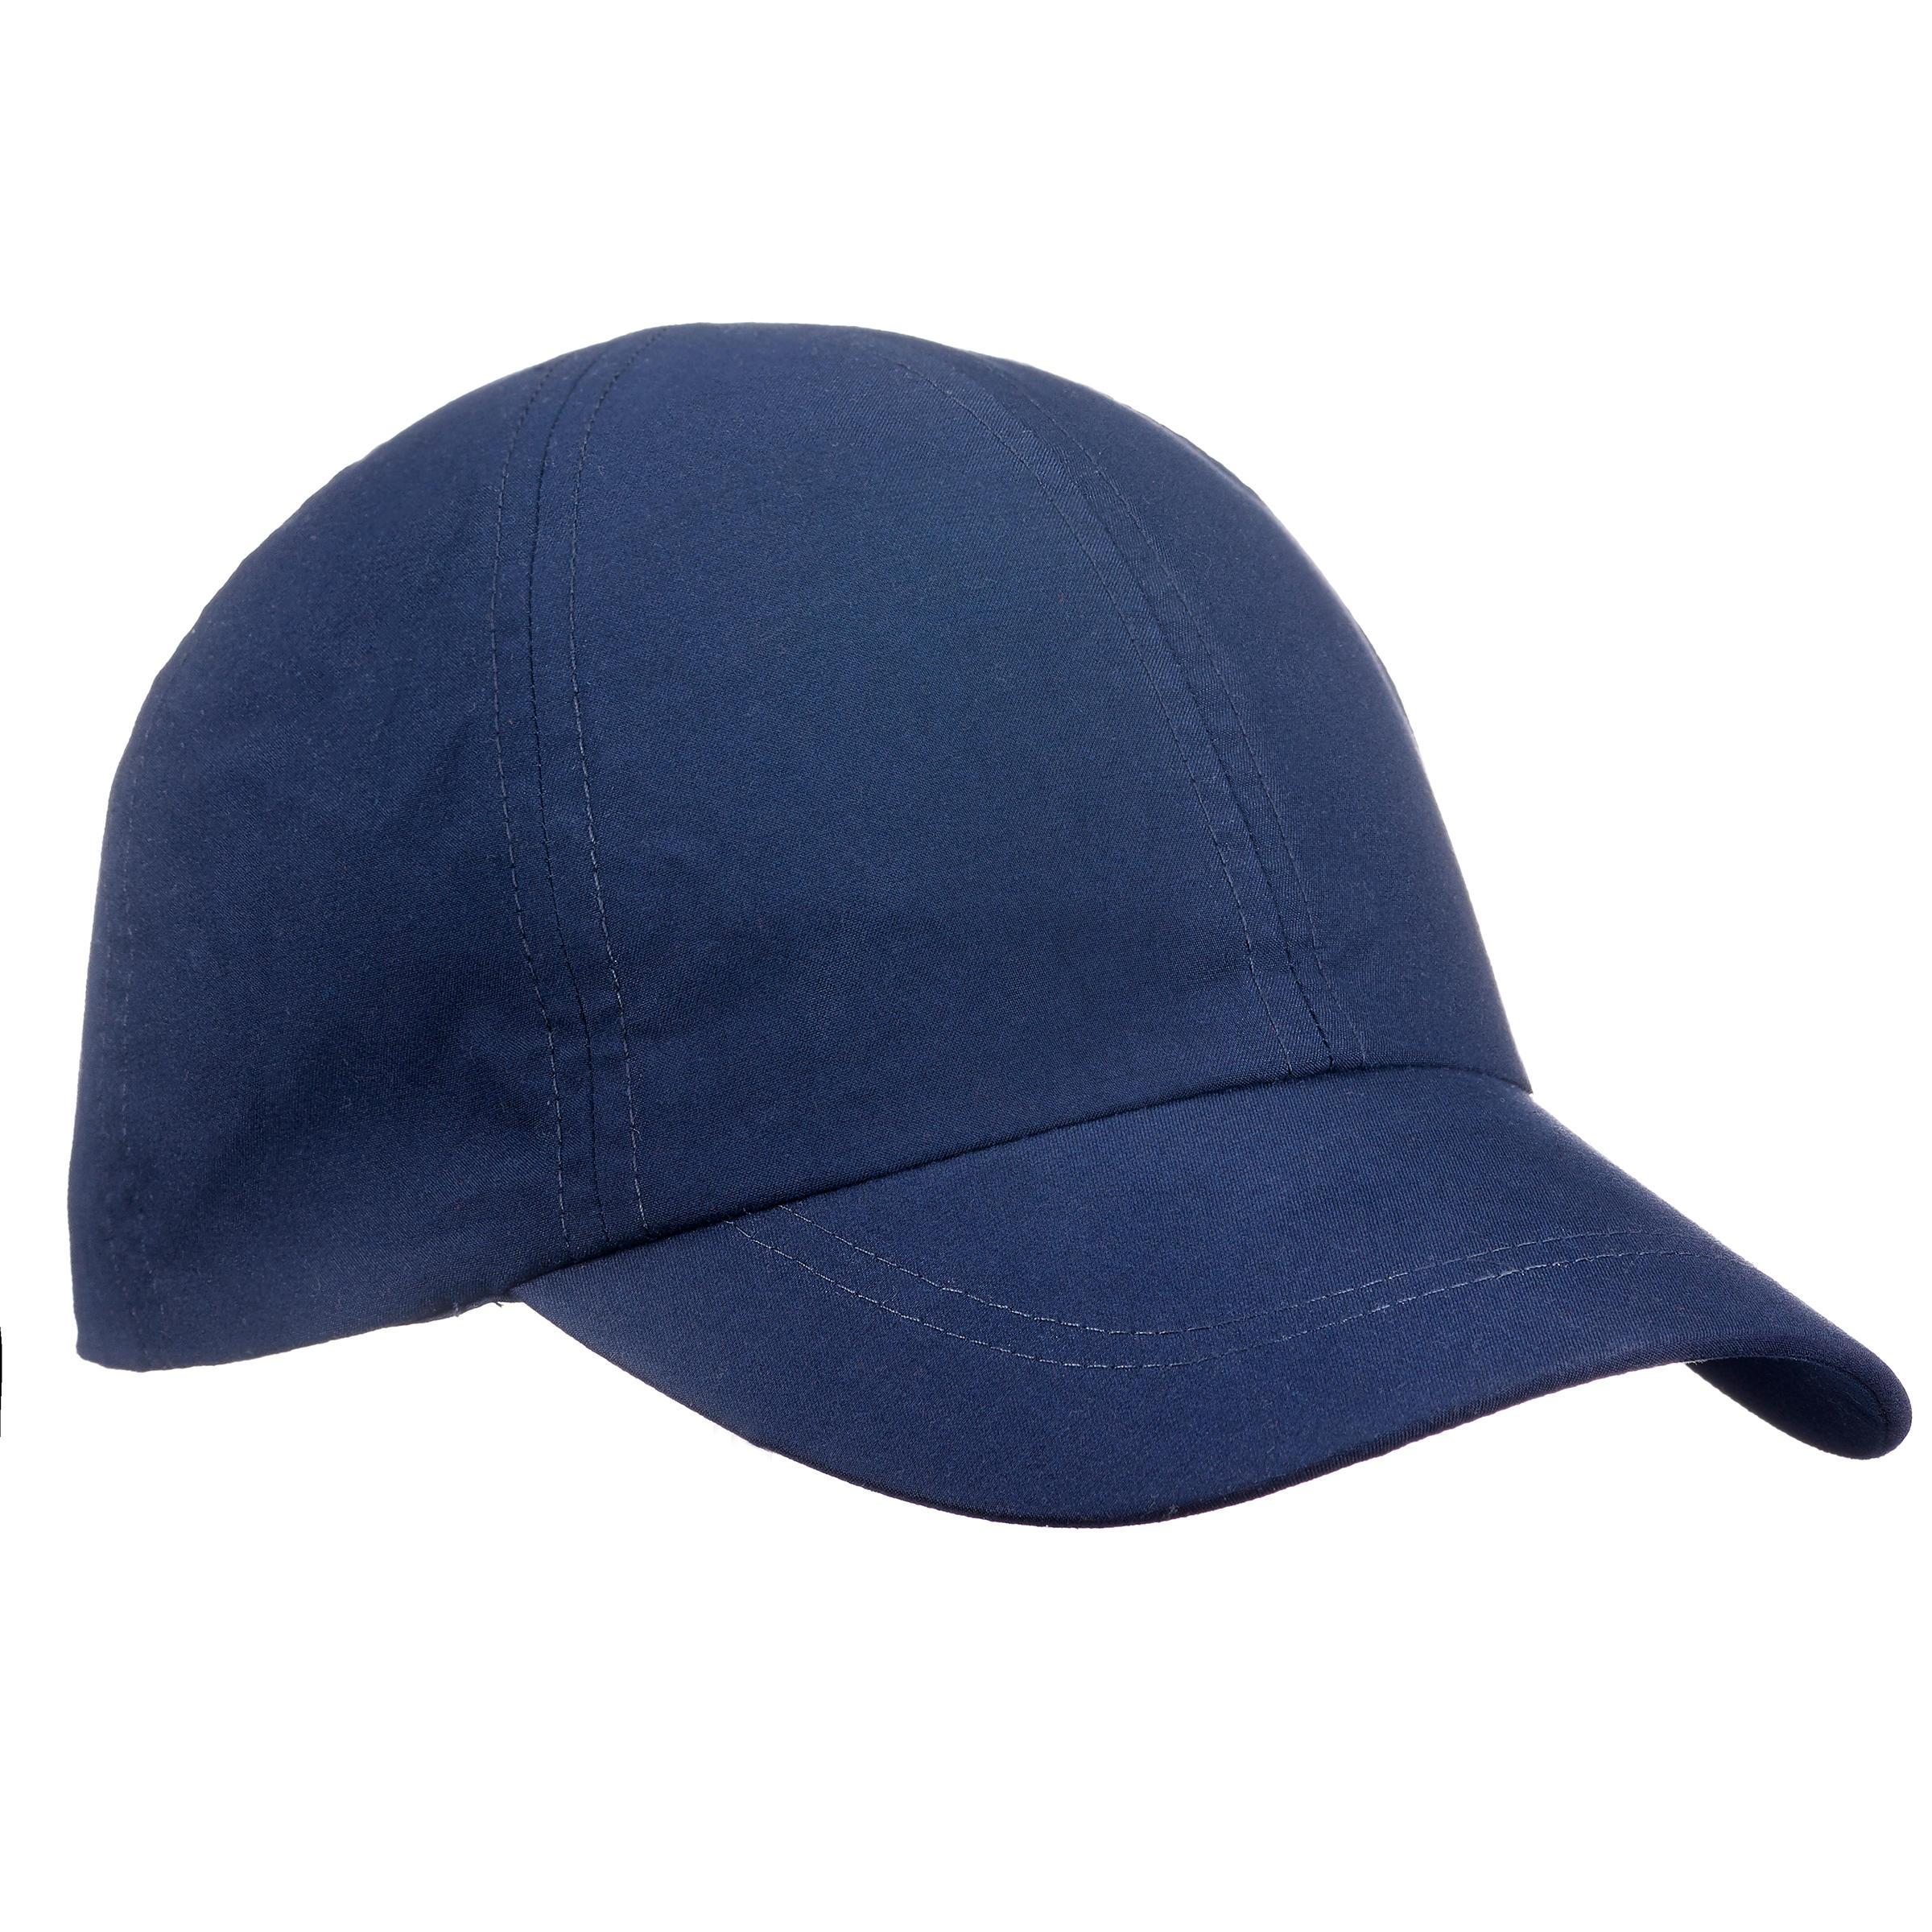 [ด่วน!! โปรโมชั่นมีจำนวนจำกัด] หมวกสำหรับการเทรคกิ้งบนภูเขารุ่น TREK 100 (สีฟ้า) สำหรับ เดินเขาแทรคกิ้งหลายวัน เดินป่า